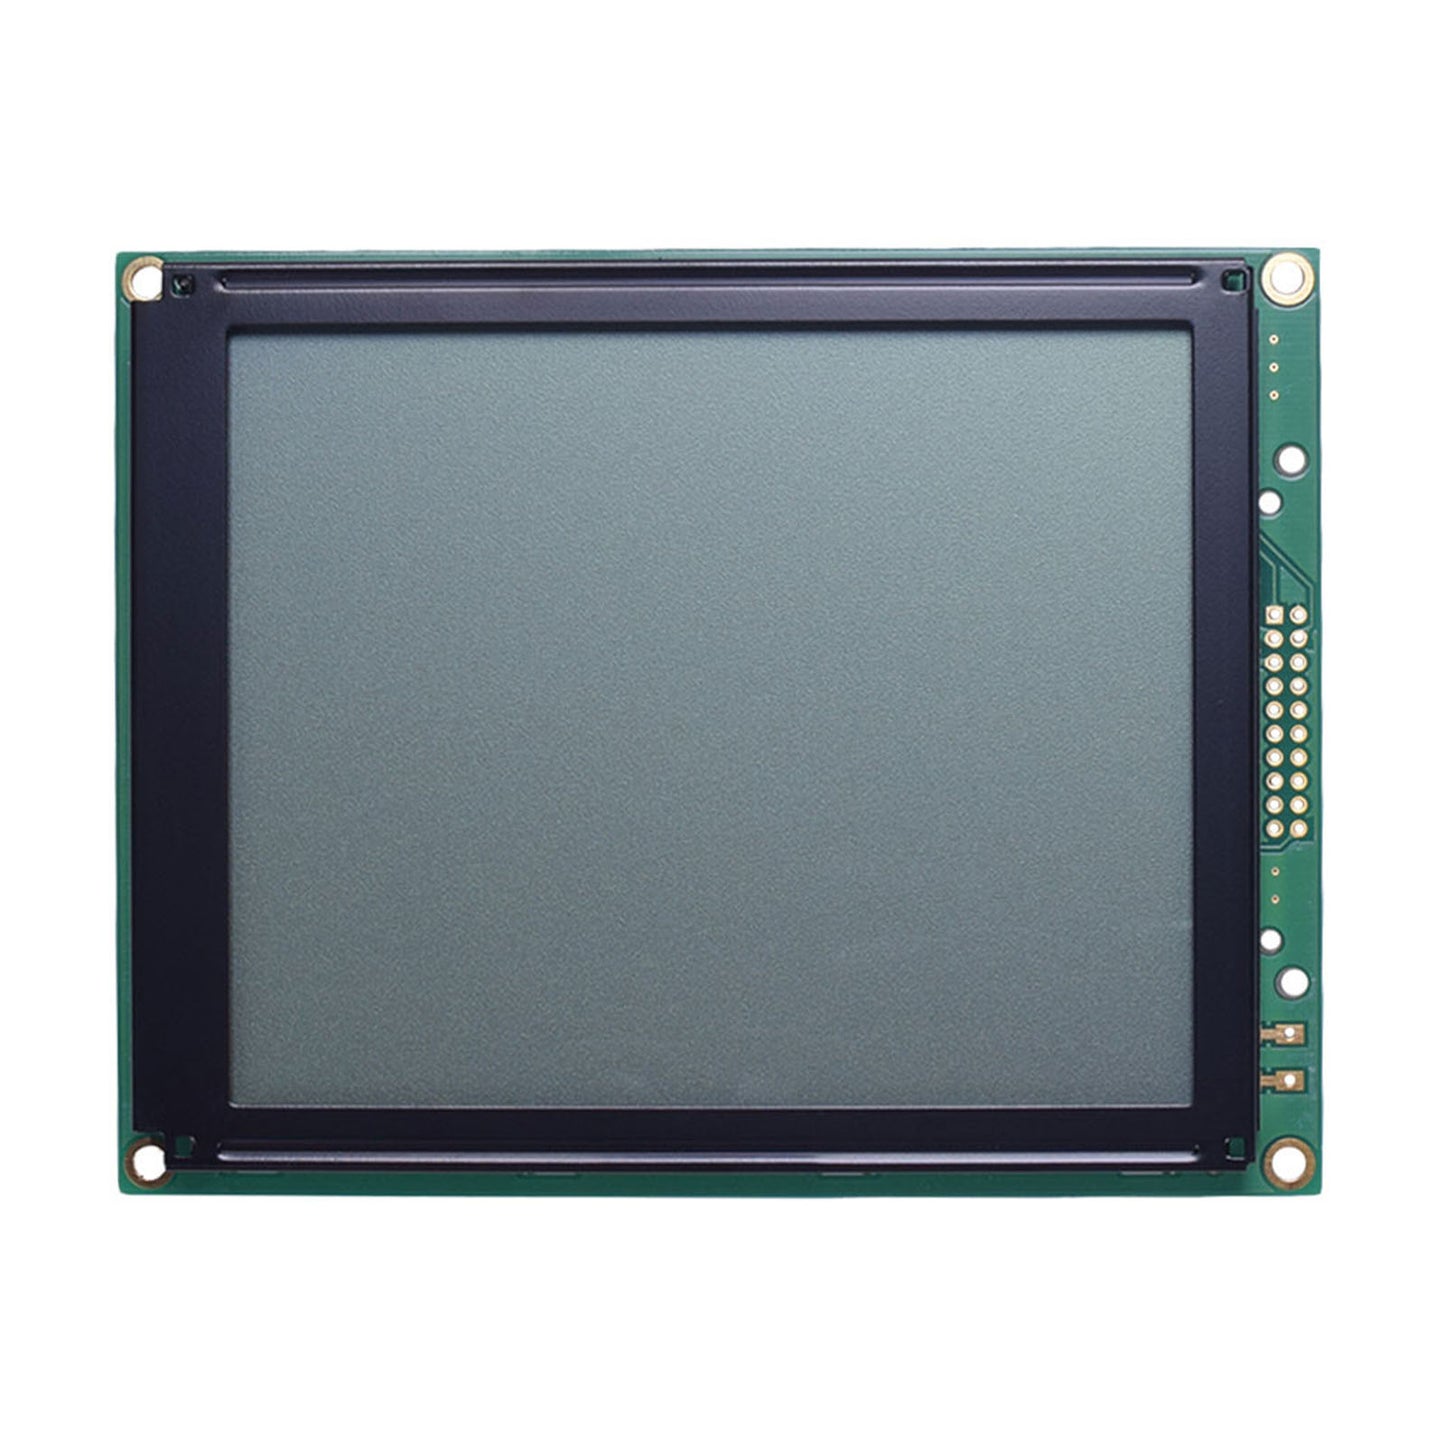 DisplayModule 5.12" 160x128 Graphic LCD - MCU